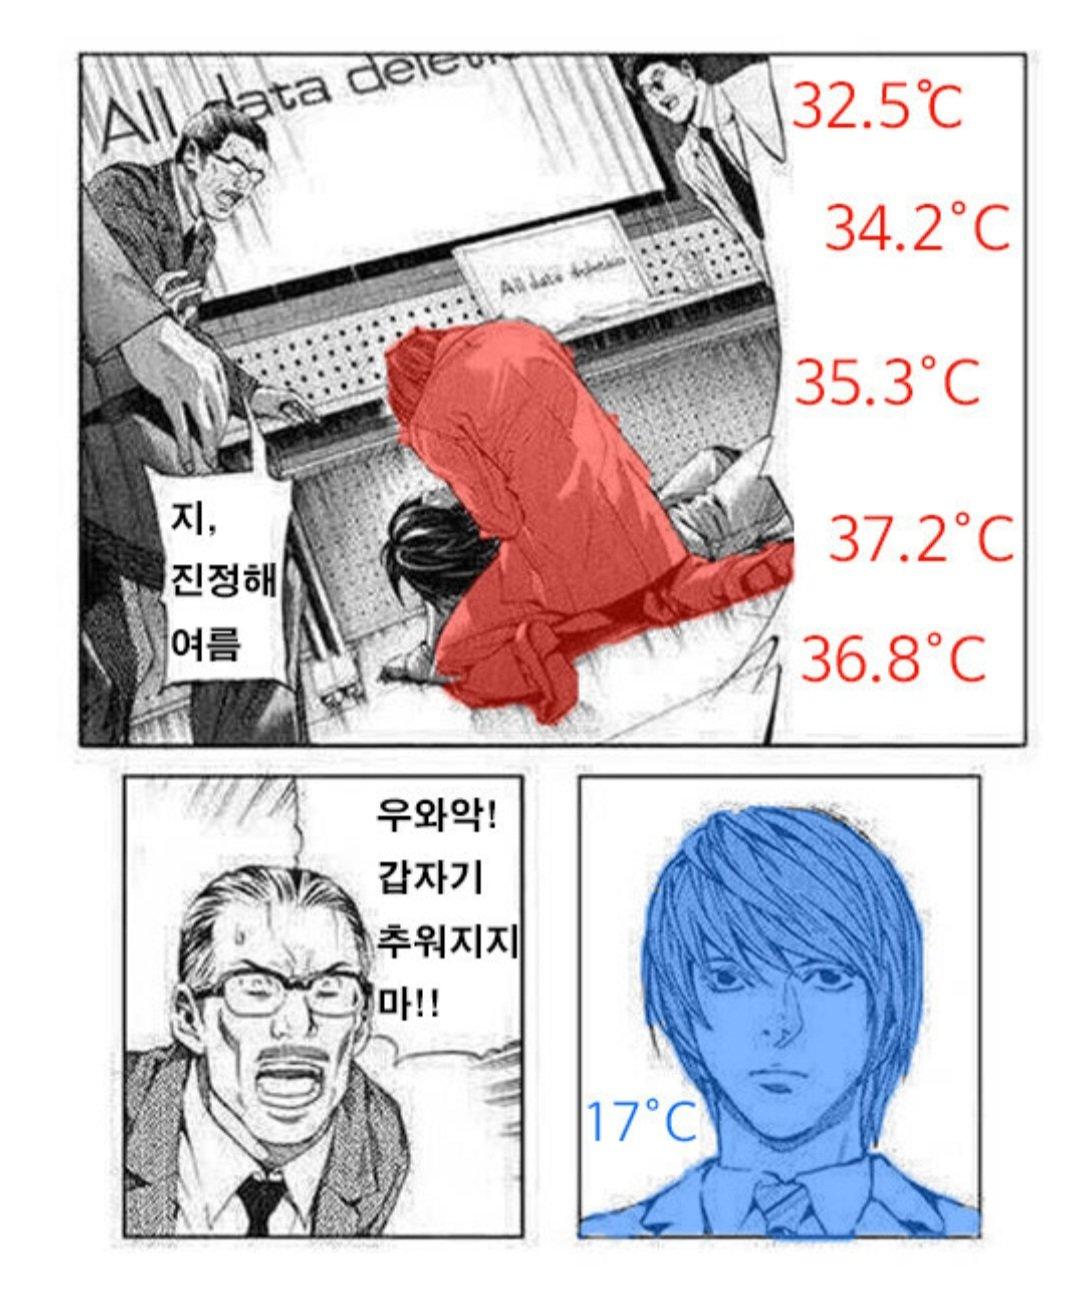 現在の韓国の天気状況jpg